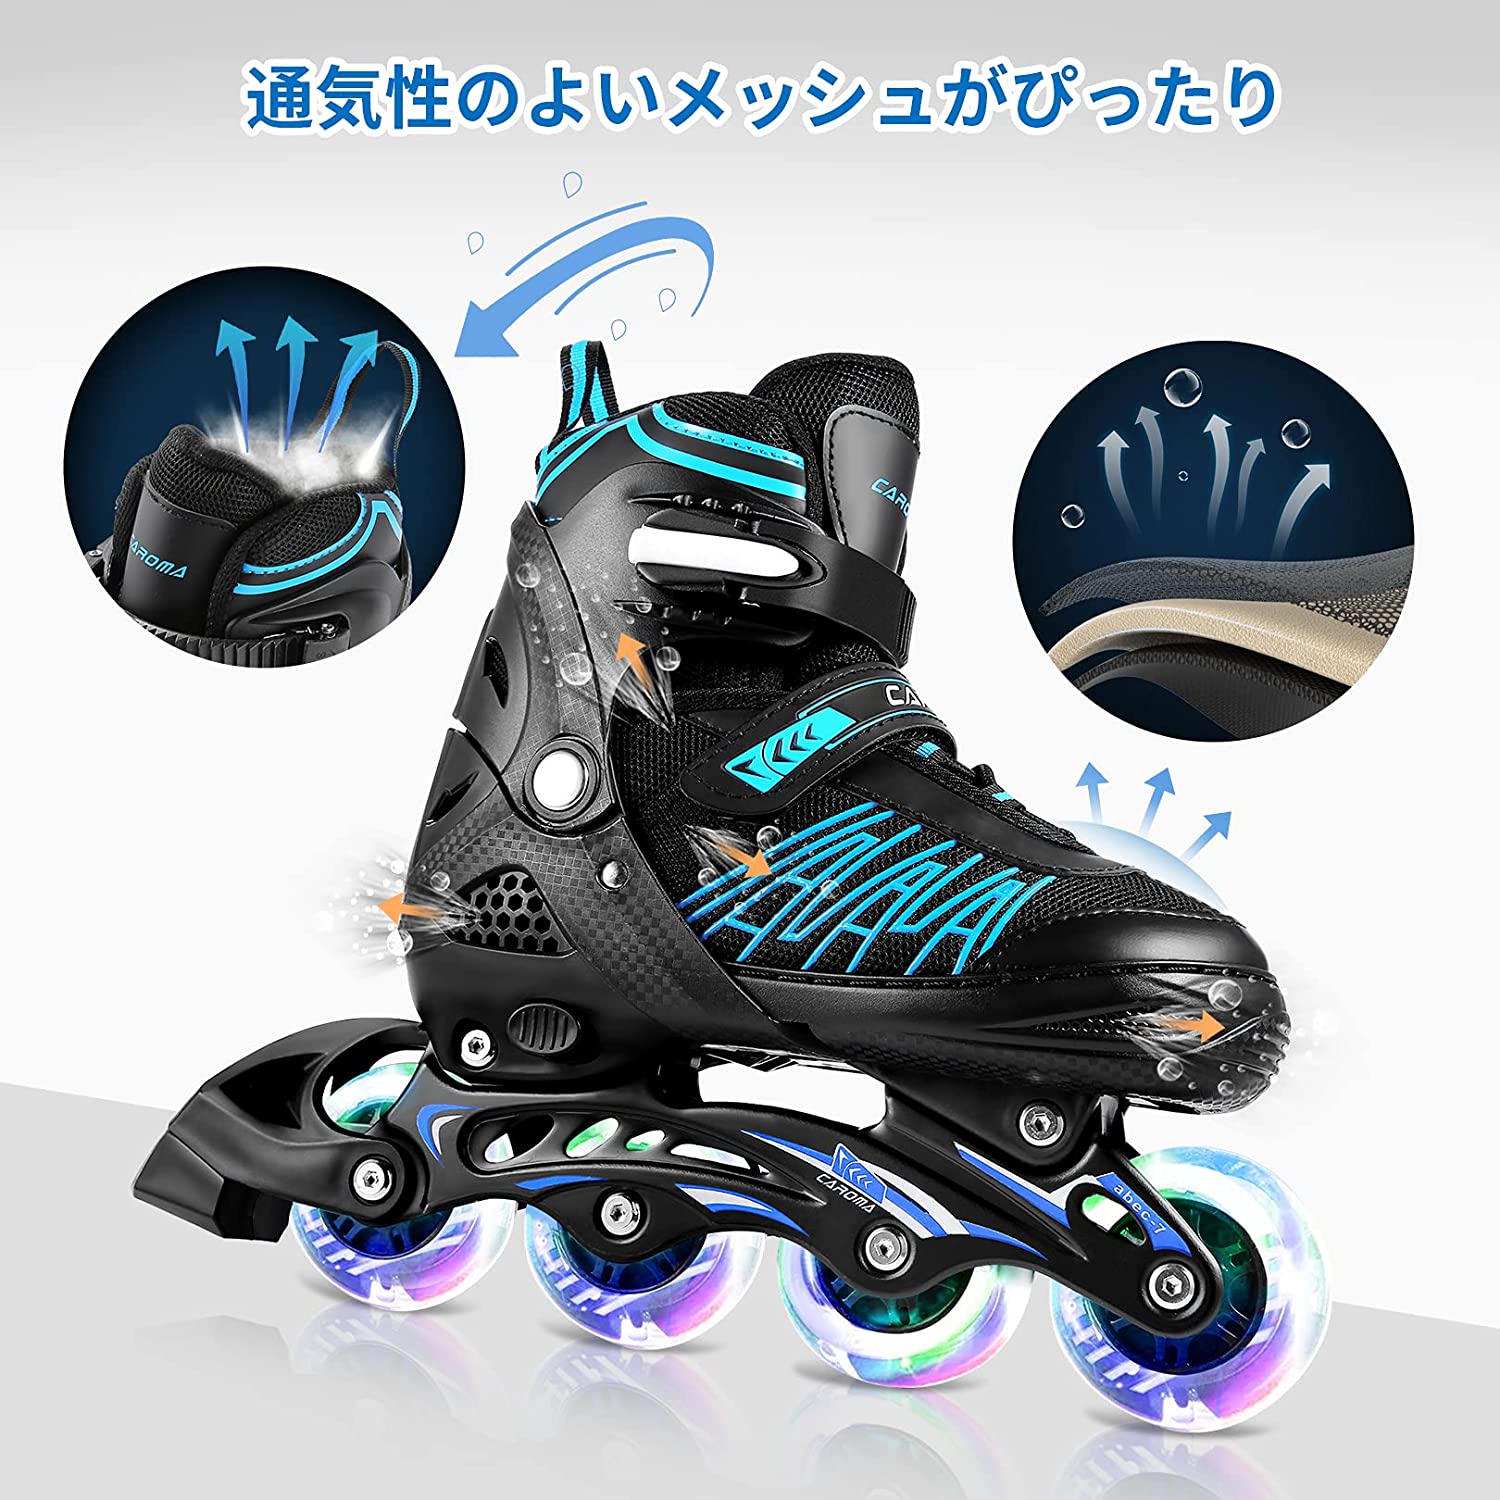 543円 誕生日/お祝い スケートスケートローラープ6本スケート保護ギアセット自転車